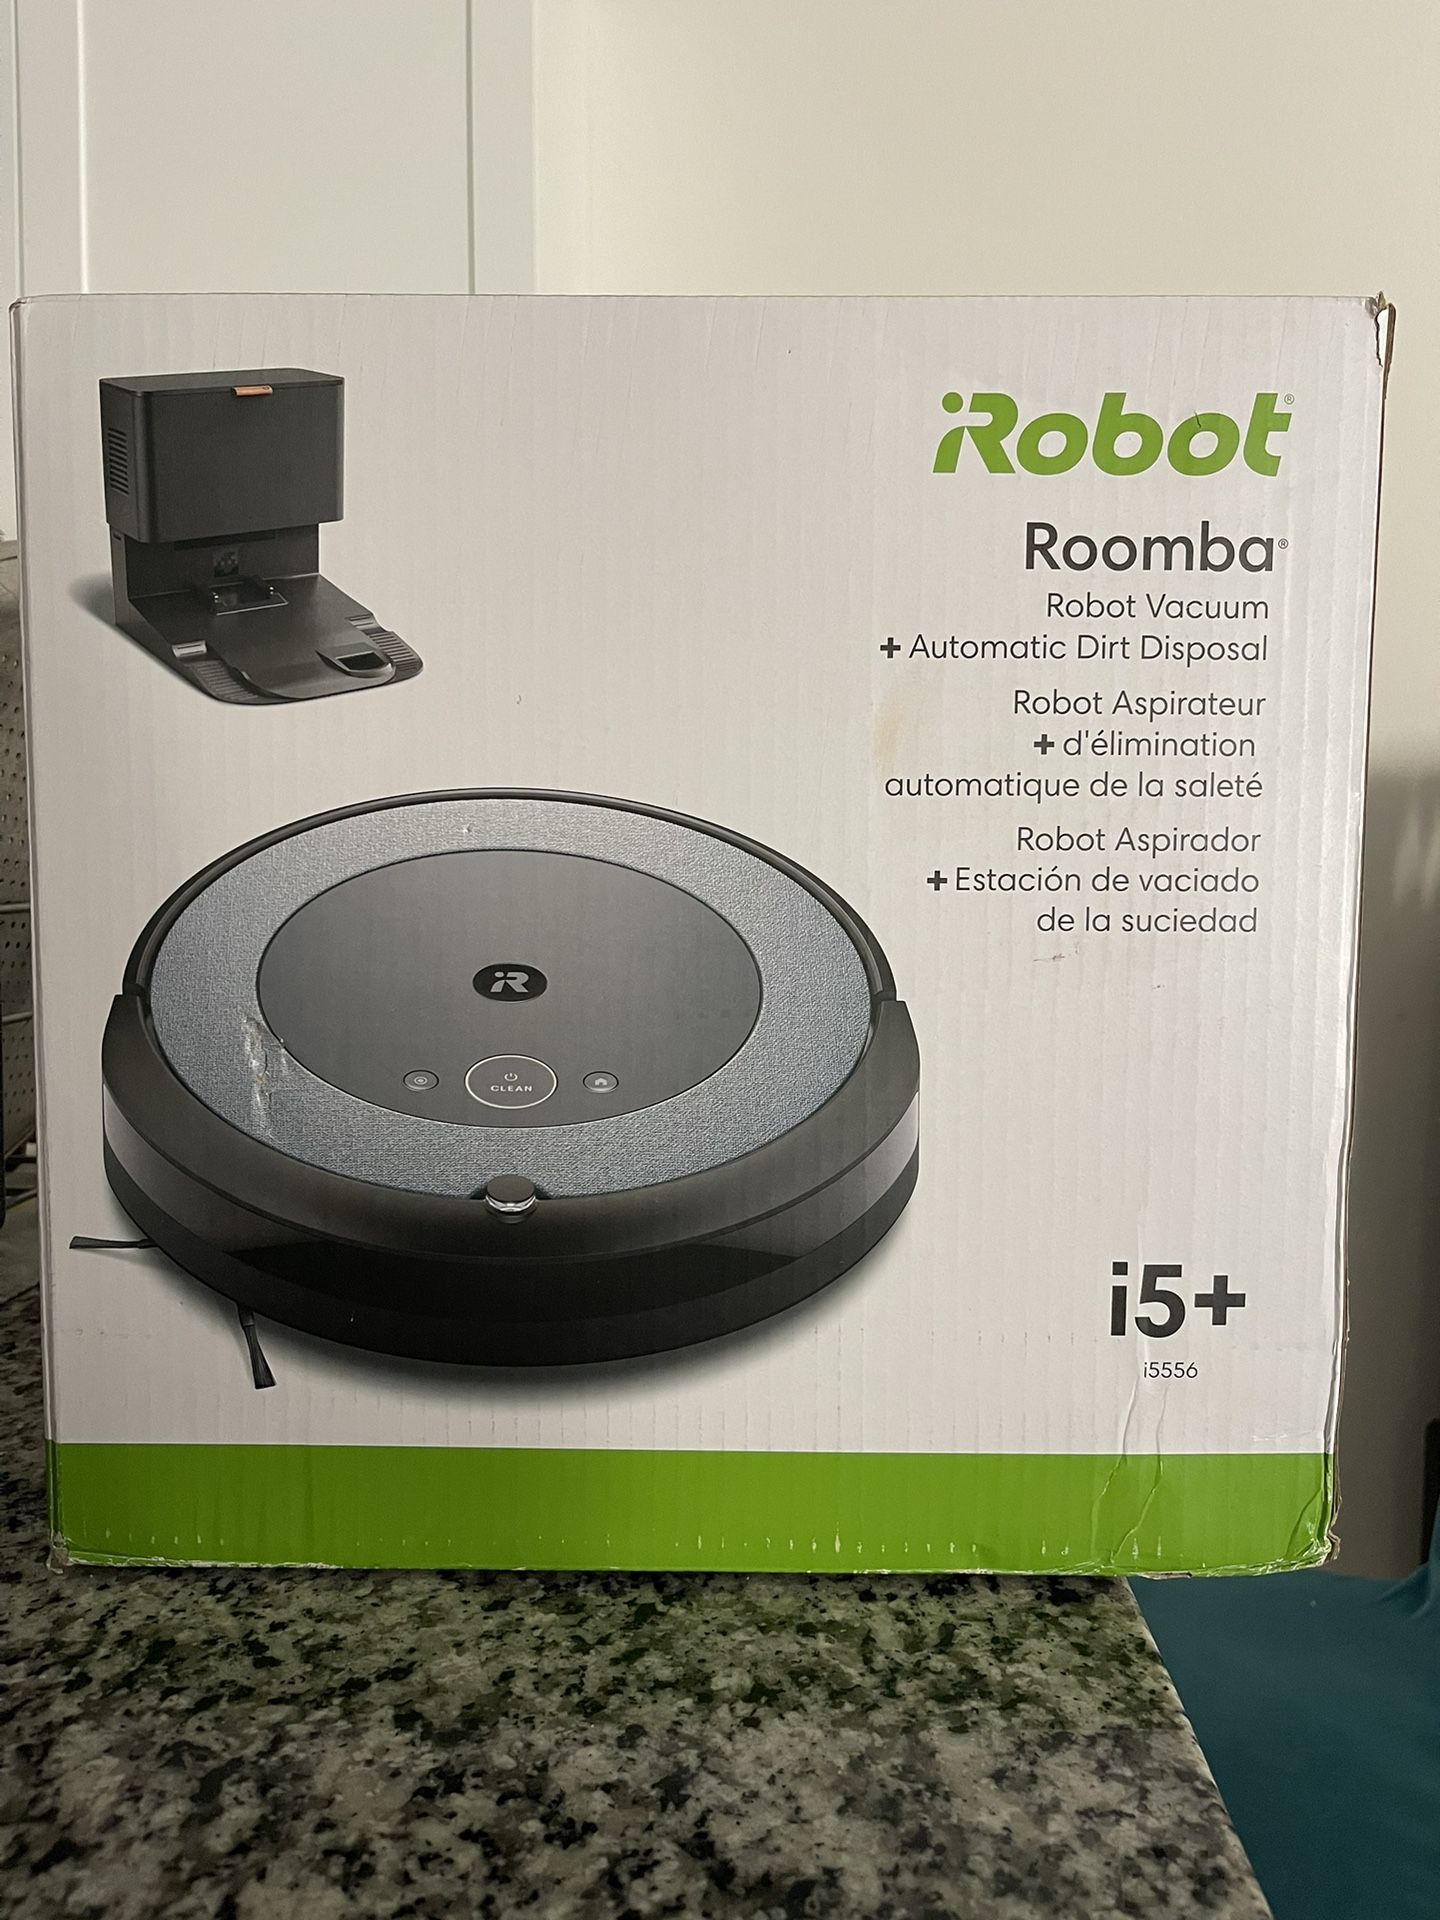 NEW* Roomba Robot Vacuum